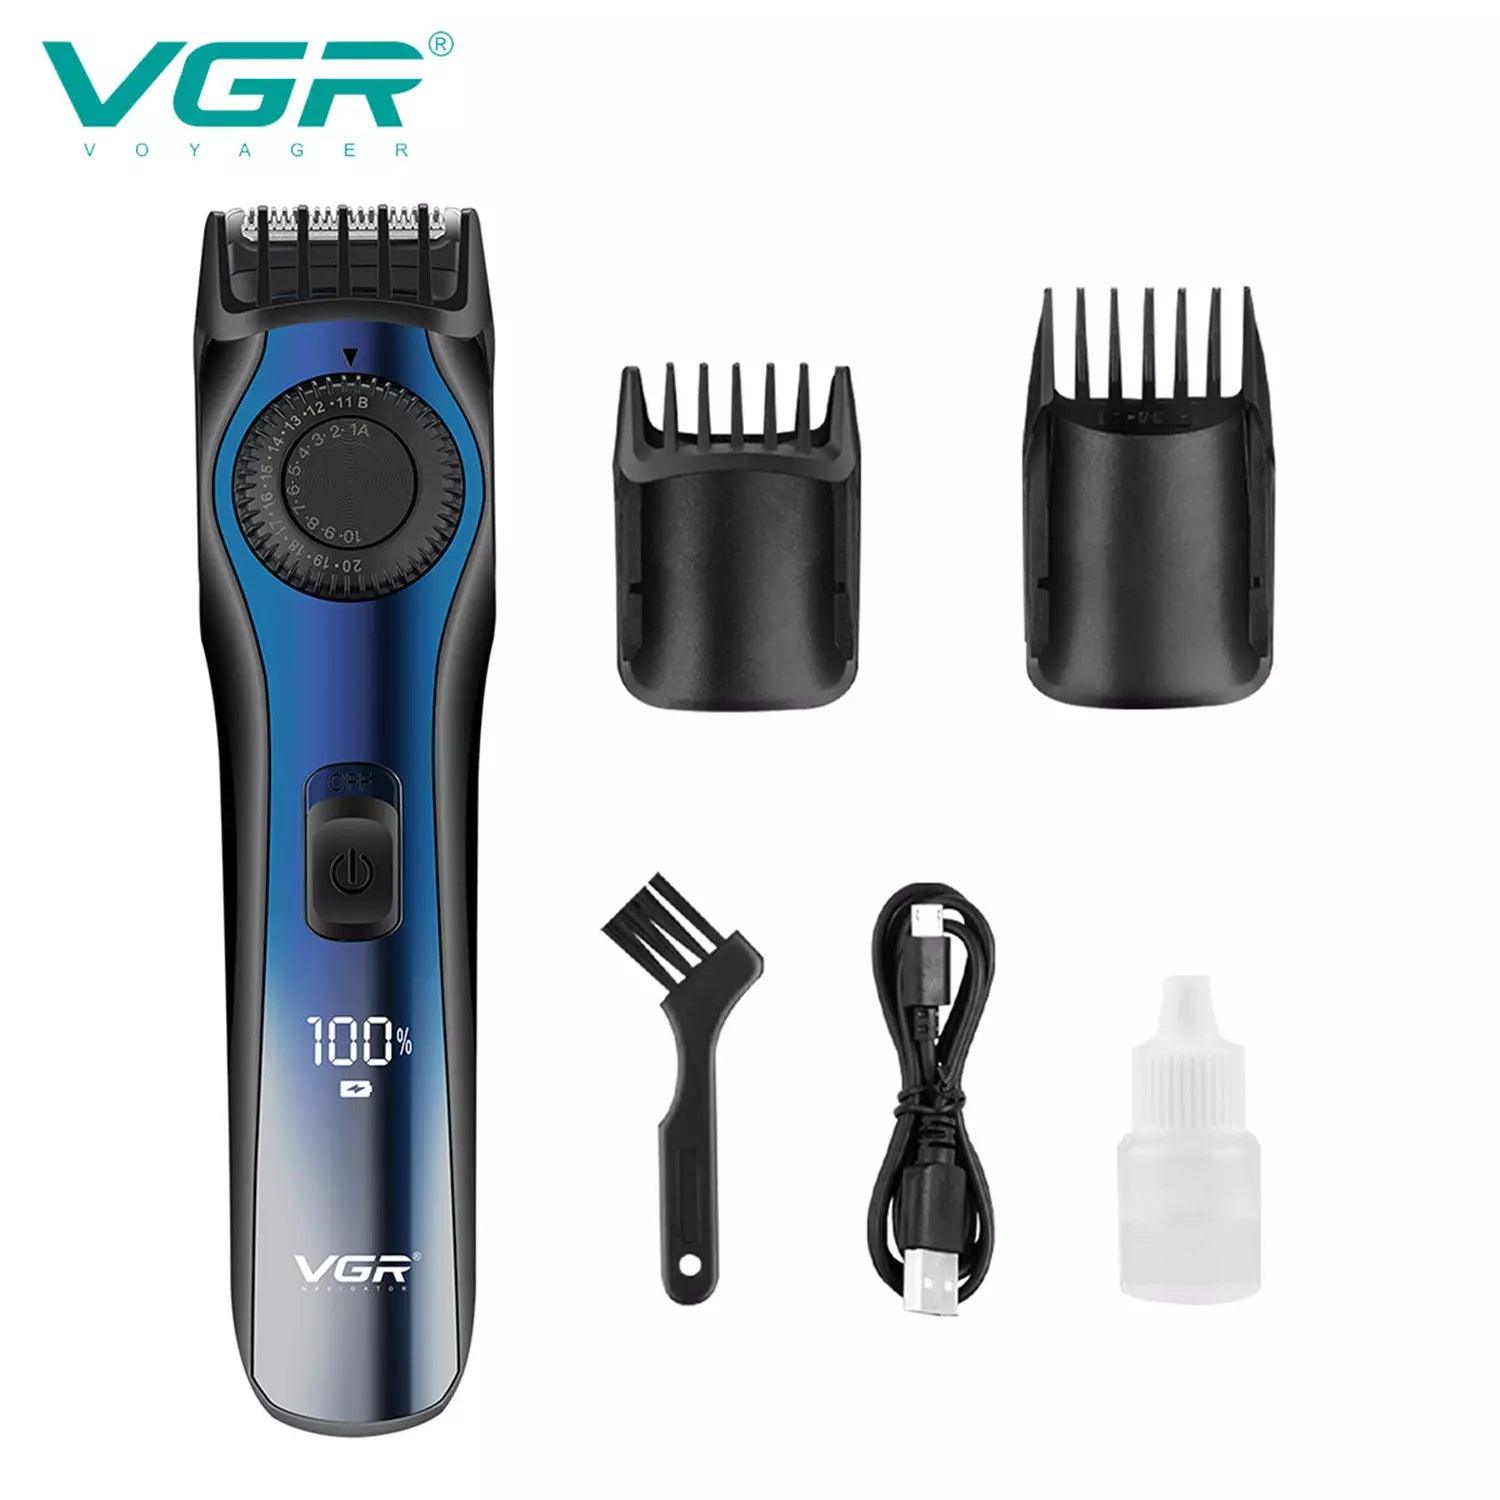 VGR V-080 Hair Trimmer For Men, Black